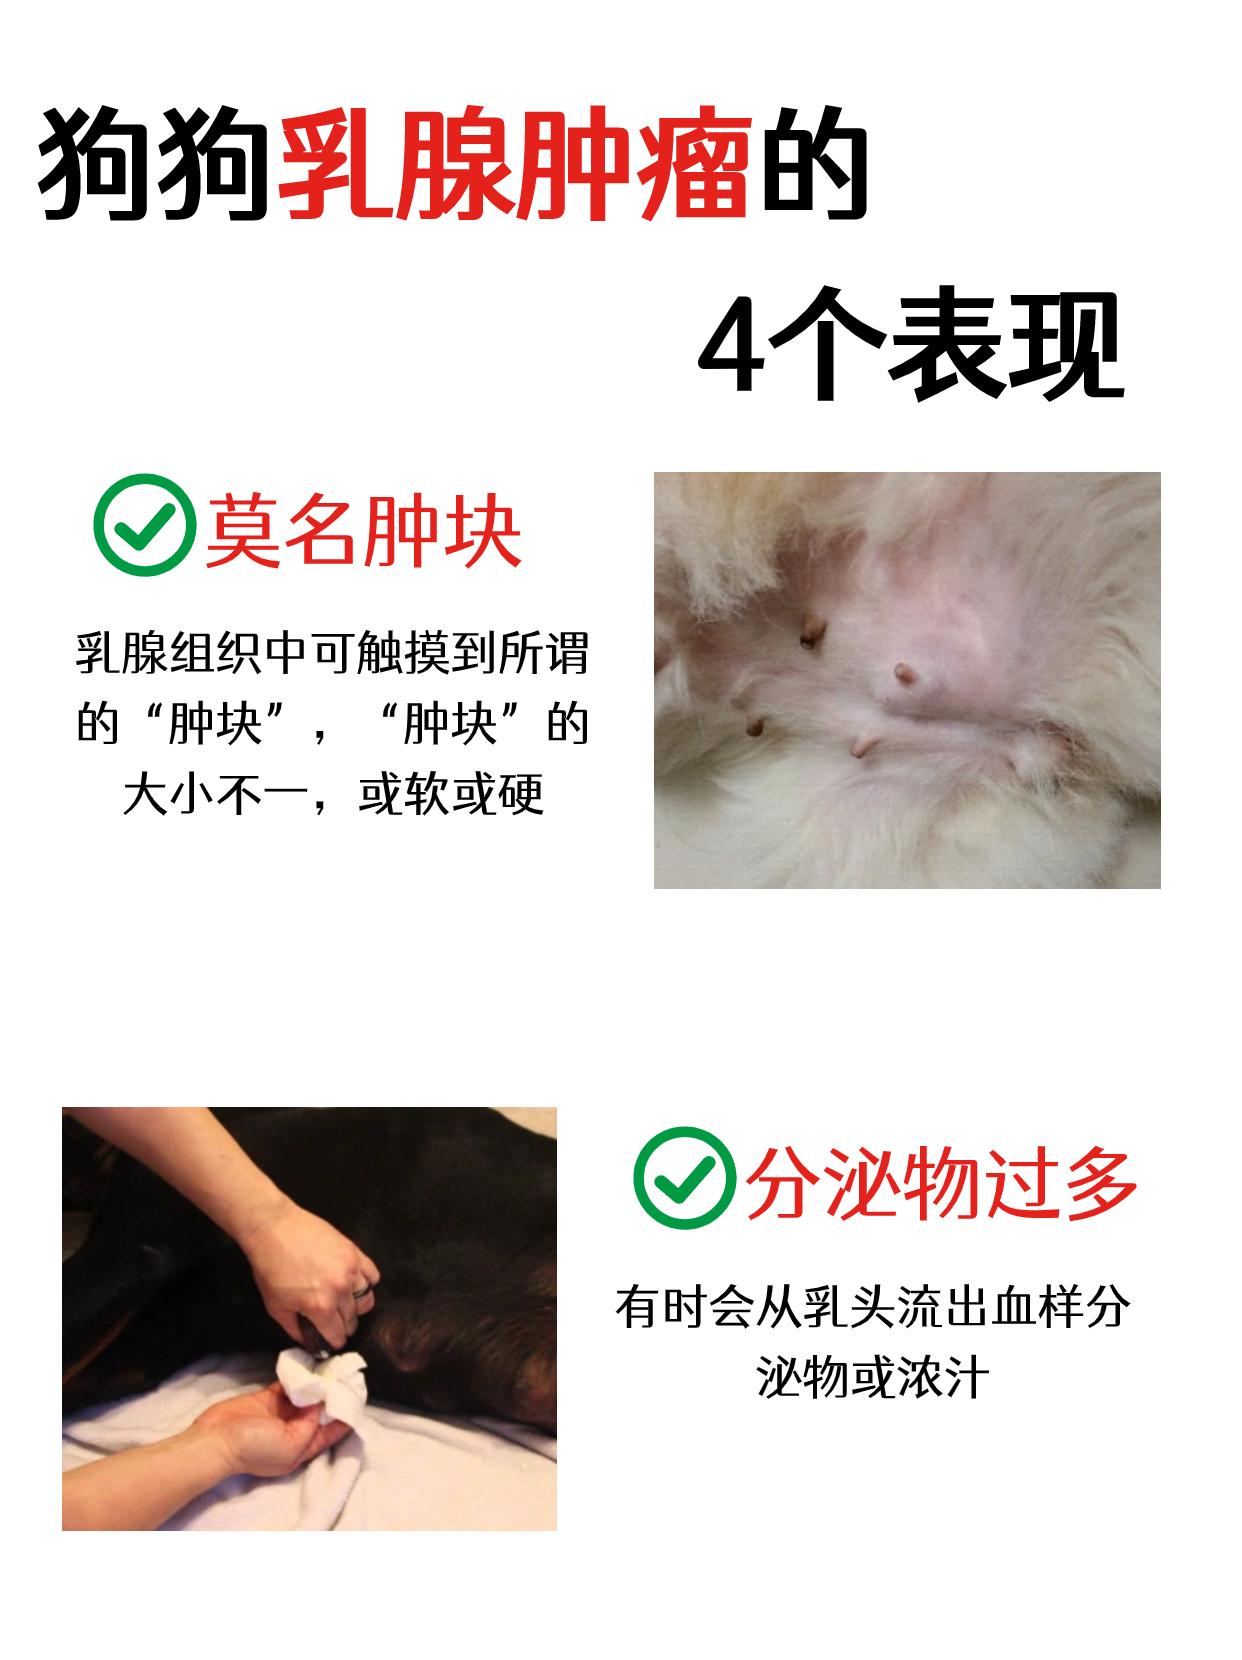 毛小孩犬只乳腺癌的治疗简介 - 陈骏逸医师 与你癌归于好